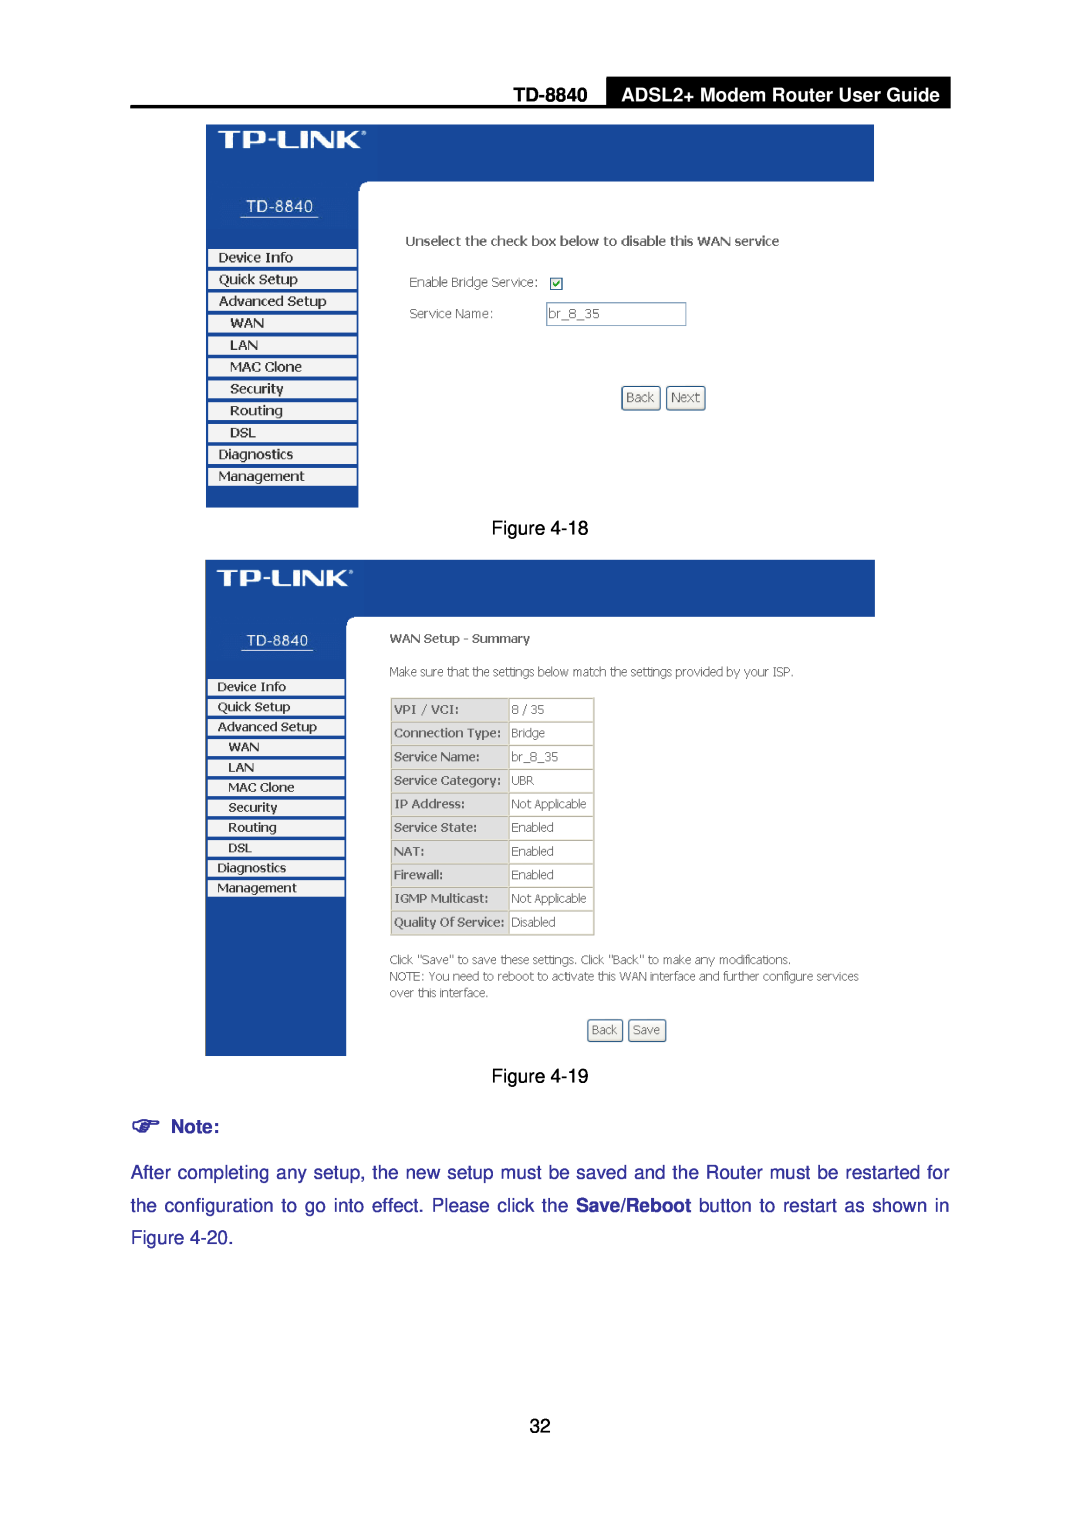 TP-Link TD-8840 manual ADSL2+ Modem Router User Guide, Figure Figure 